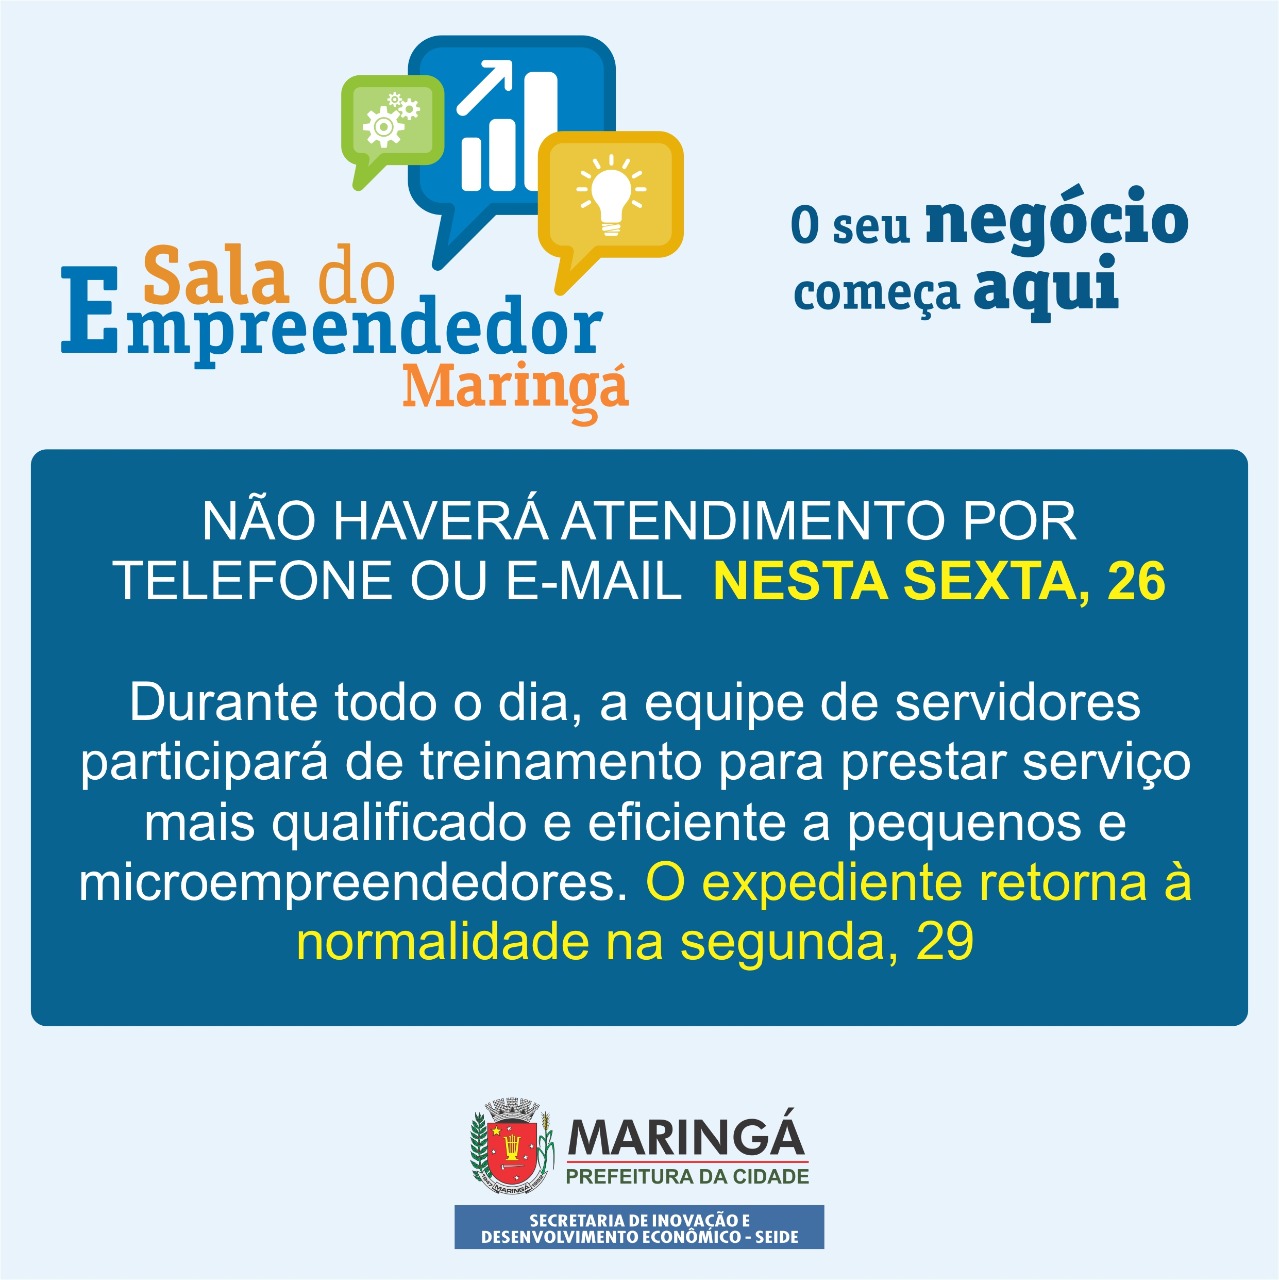 Prefeitura de Maringá informa que a Sala do Empreendedor não atenderá o público nesta sexta, 26